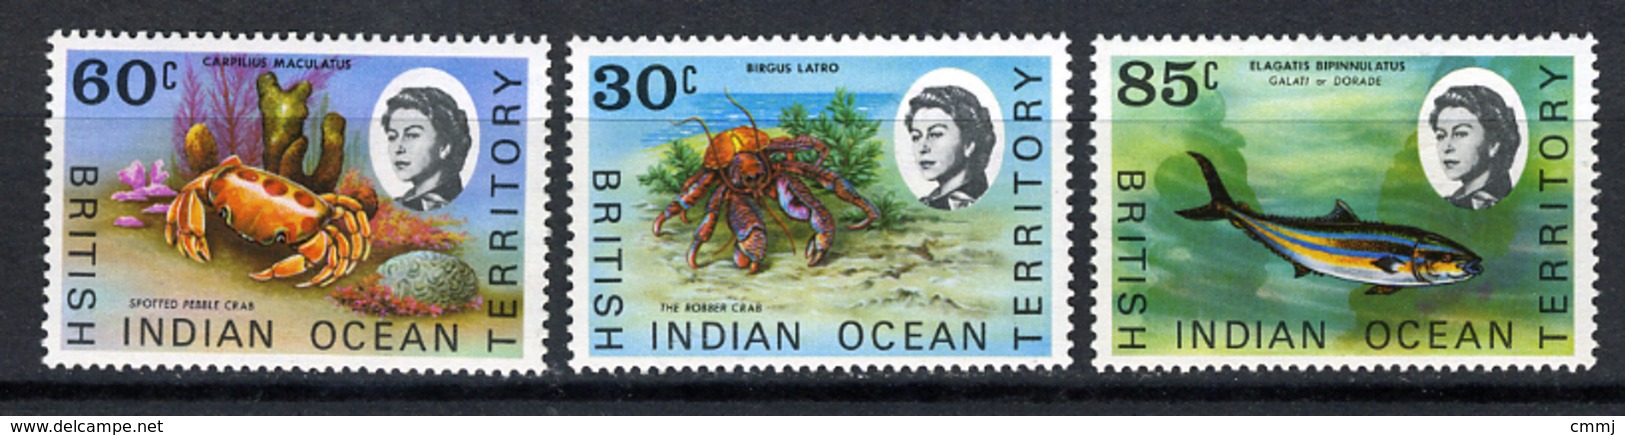 1968 - TERRITORIO BRITANNICO DELL'OCEANO INDIANO - Mi. Nr. 36/38 - NLH - (CW2427.44) - Britisches Territorium Im Indischen Ozean